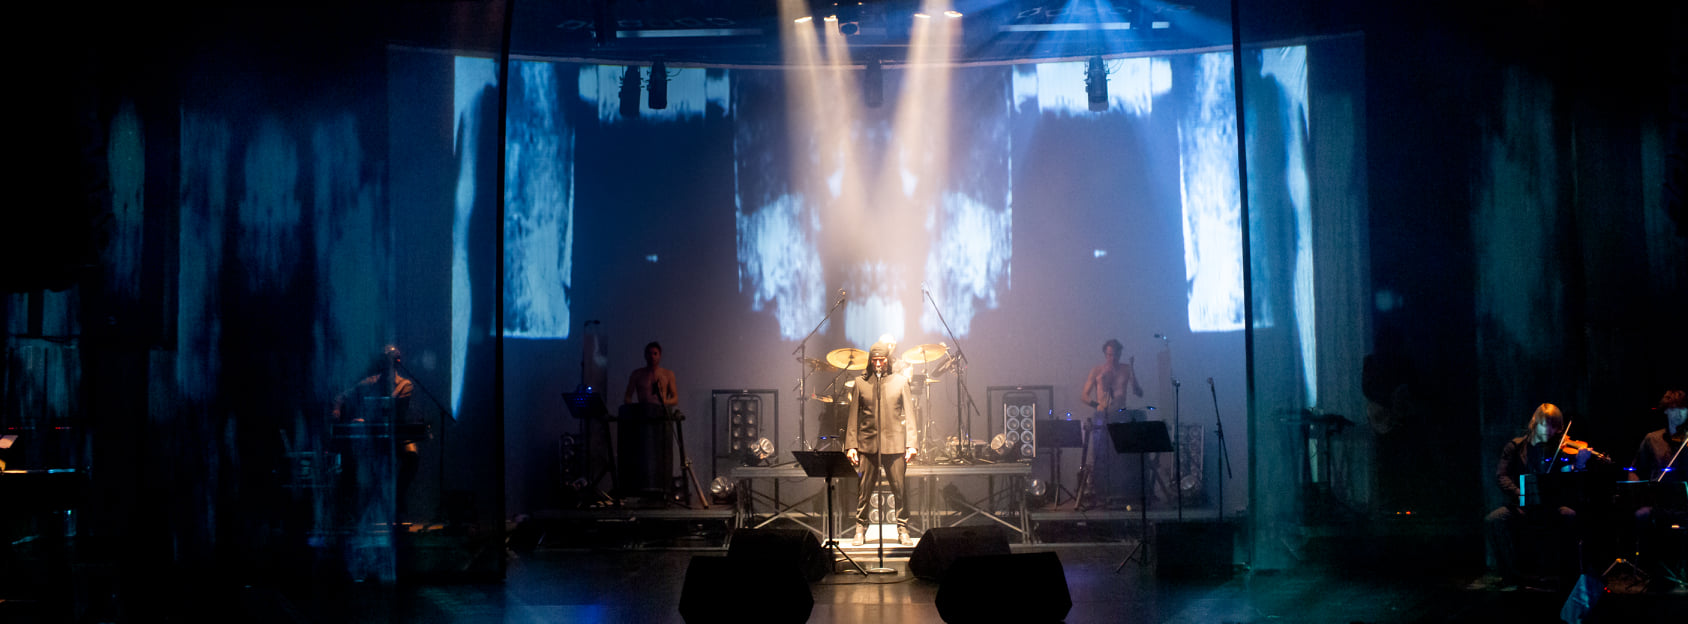 Laibach nakon pet godina ponovno u Lisinskom: Predstavljaju uzbudljivi projekt ‘Wir sind das Volk’